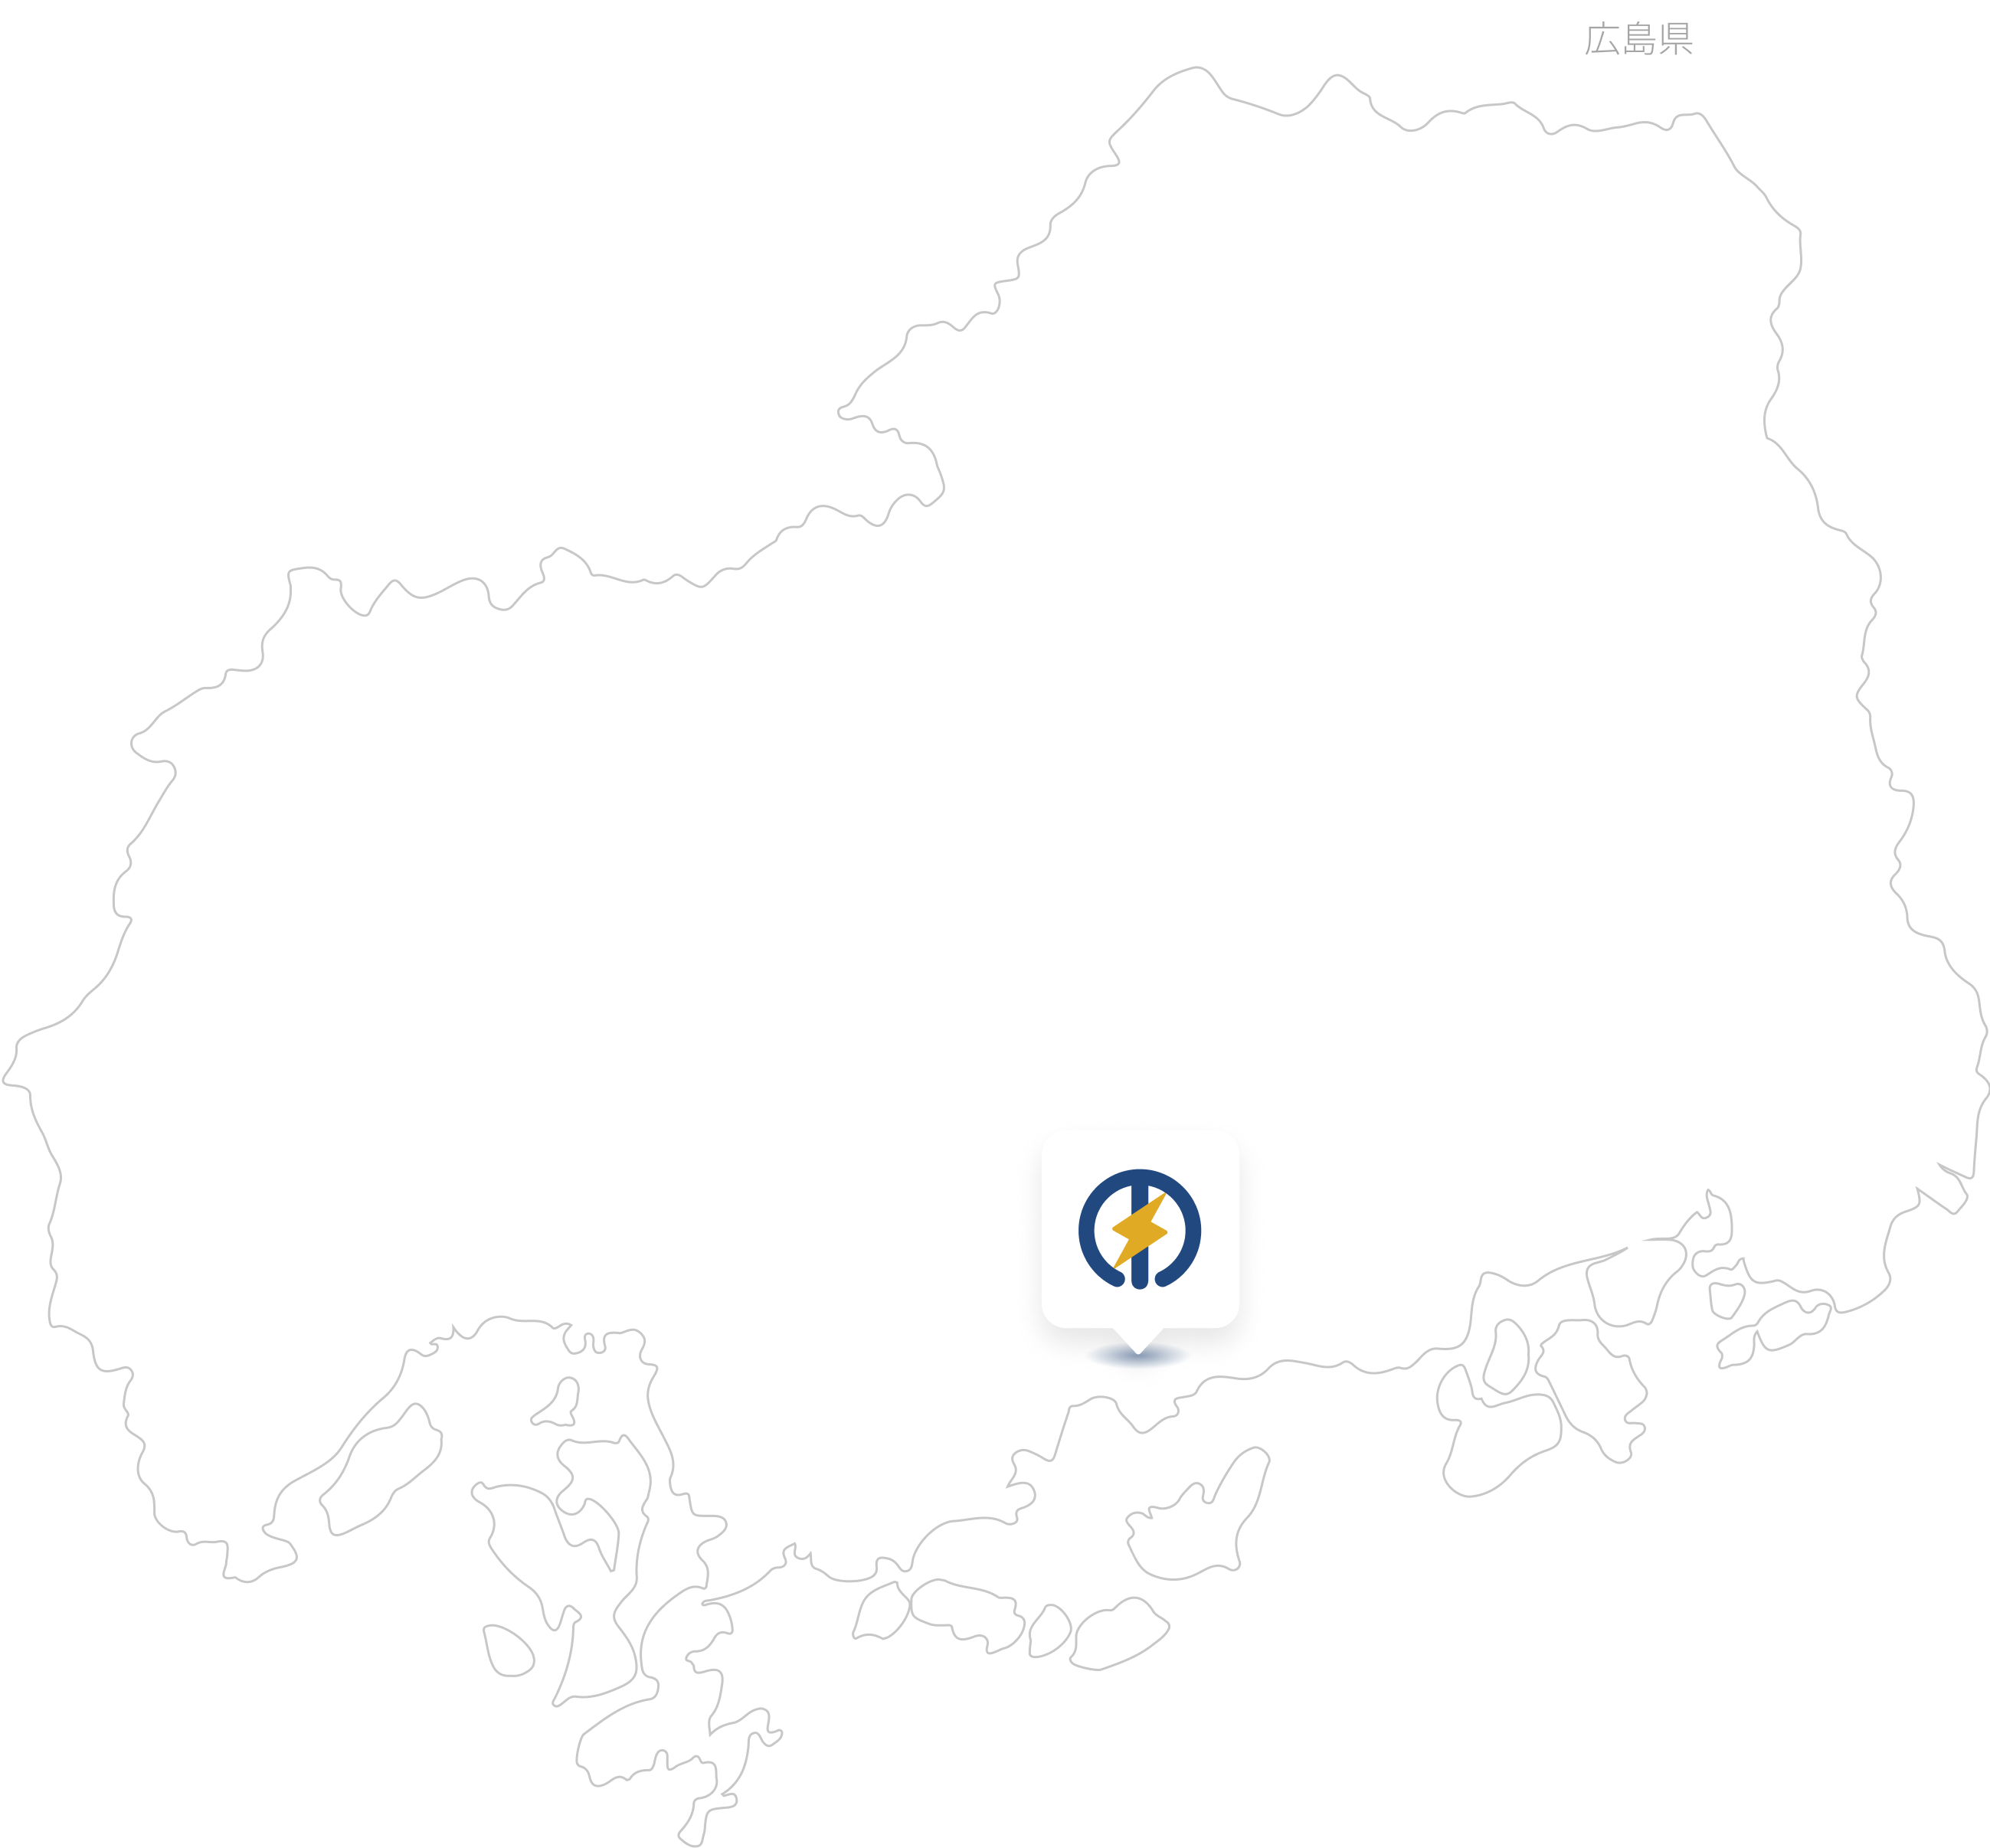 東工電設の場所を示す地図。広島県南部にピンが立っている。